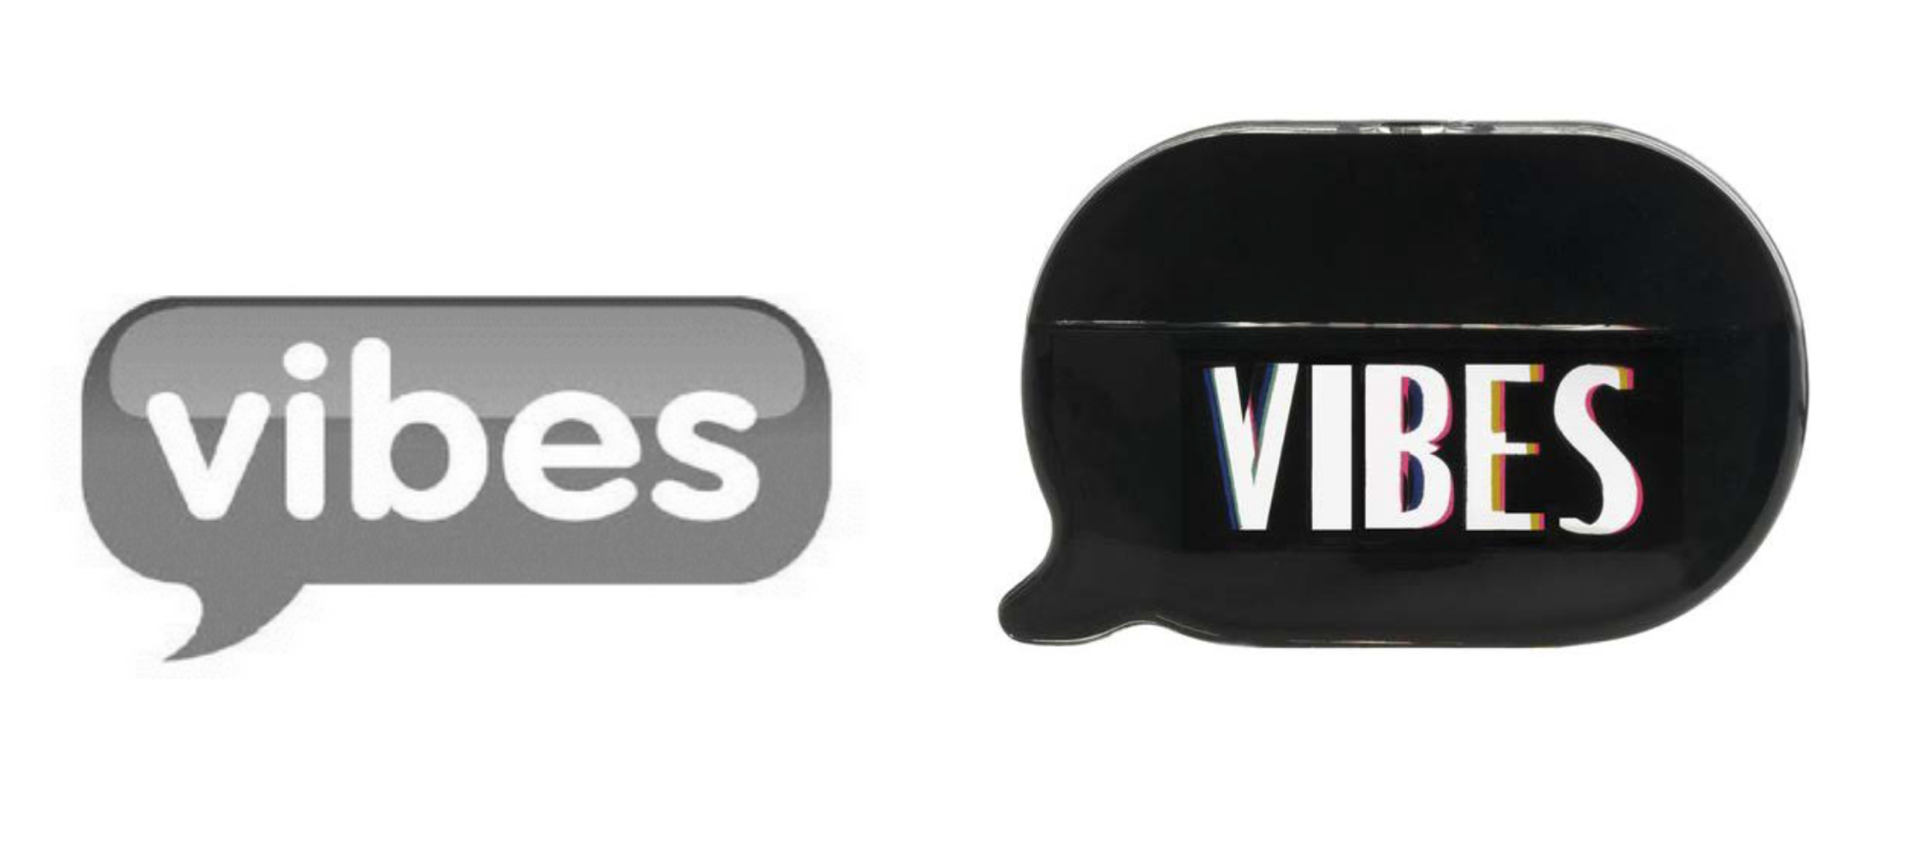  Vibes Media's trademark (left) & KKW's Vibes fragrance bottle (right) 